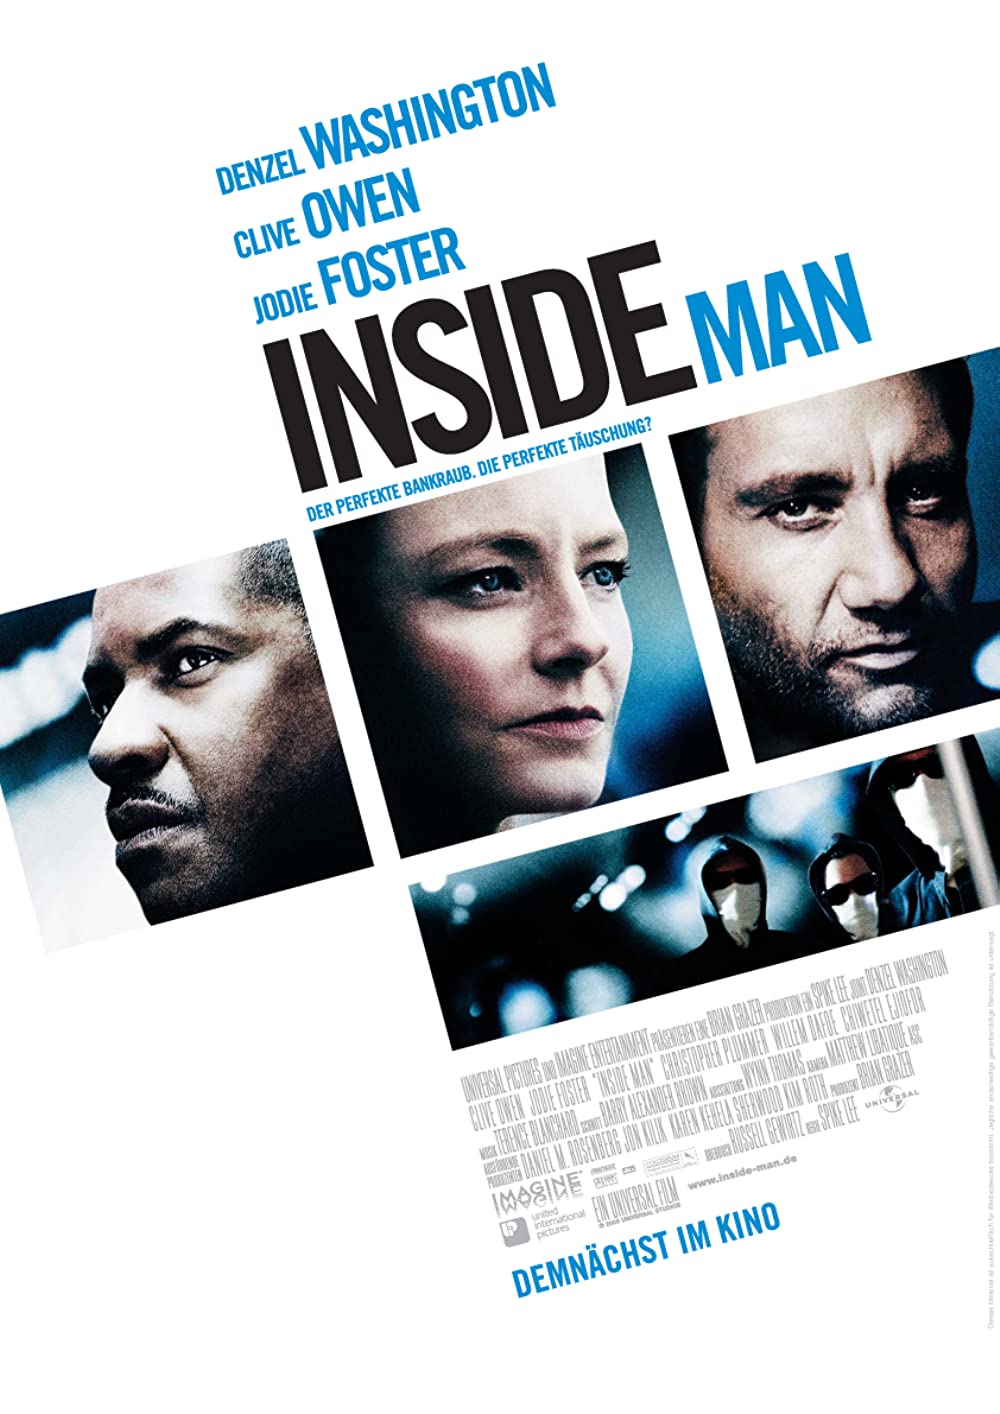 Filmbeschreibung zu Inside Man